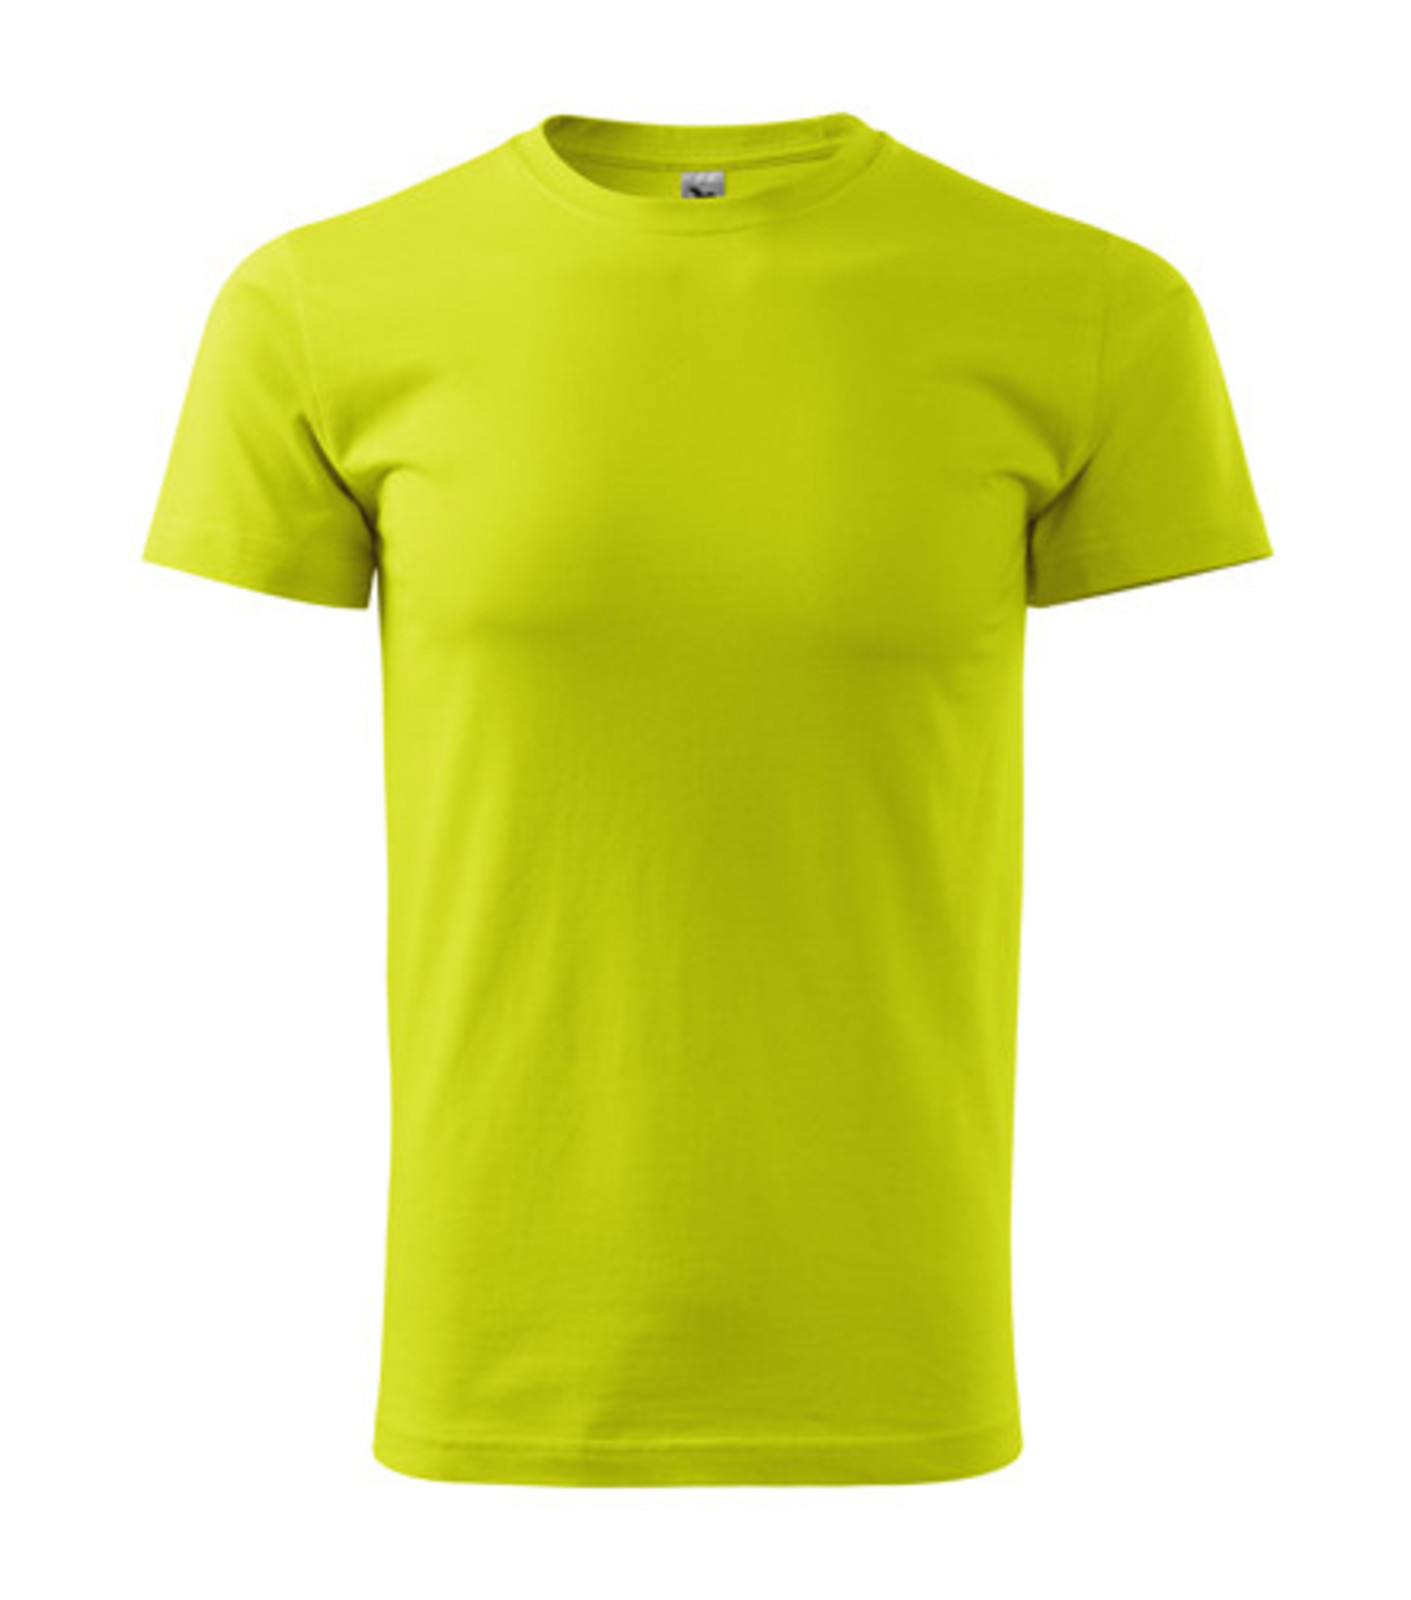 Pánske tričko Malfini Basic 129 - veľkosť: 3XL, farba: limetková